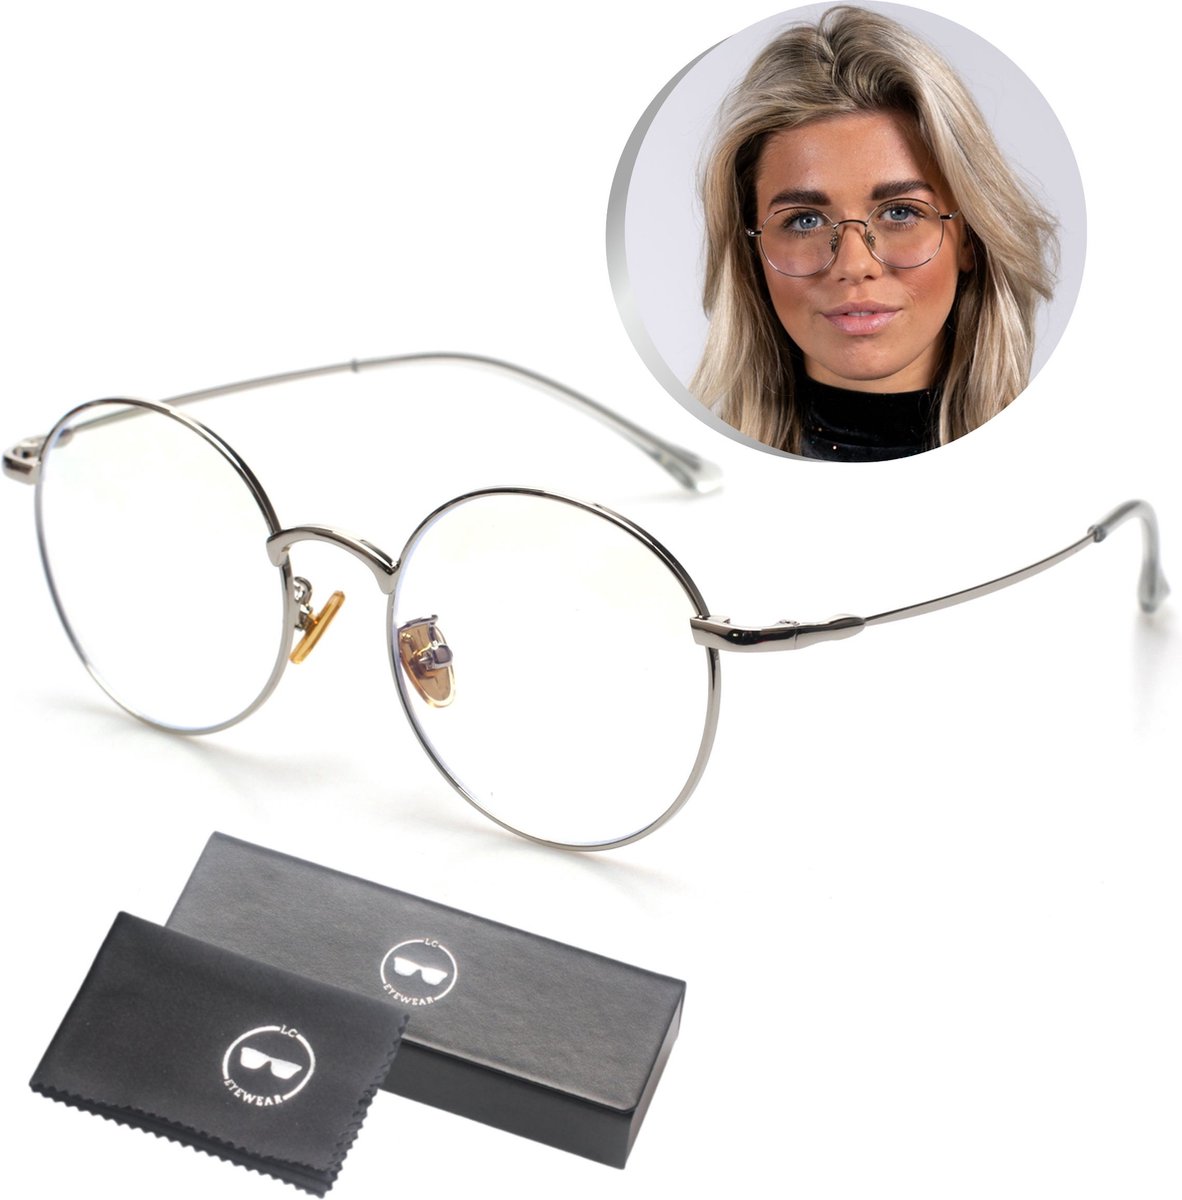 LC Eyewear Computerbril - Blauw Licht Bril - Blue Light Glasses - Beeldschermbril - Metaal - Unisex - Zilver